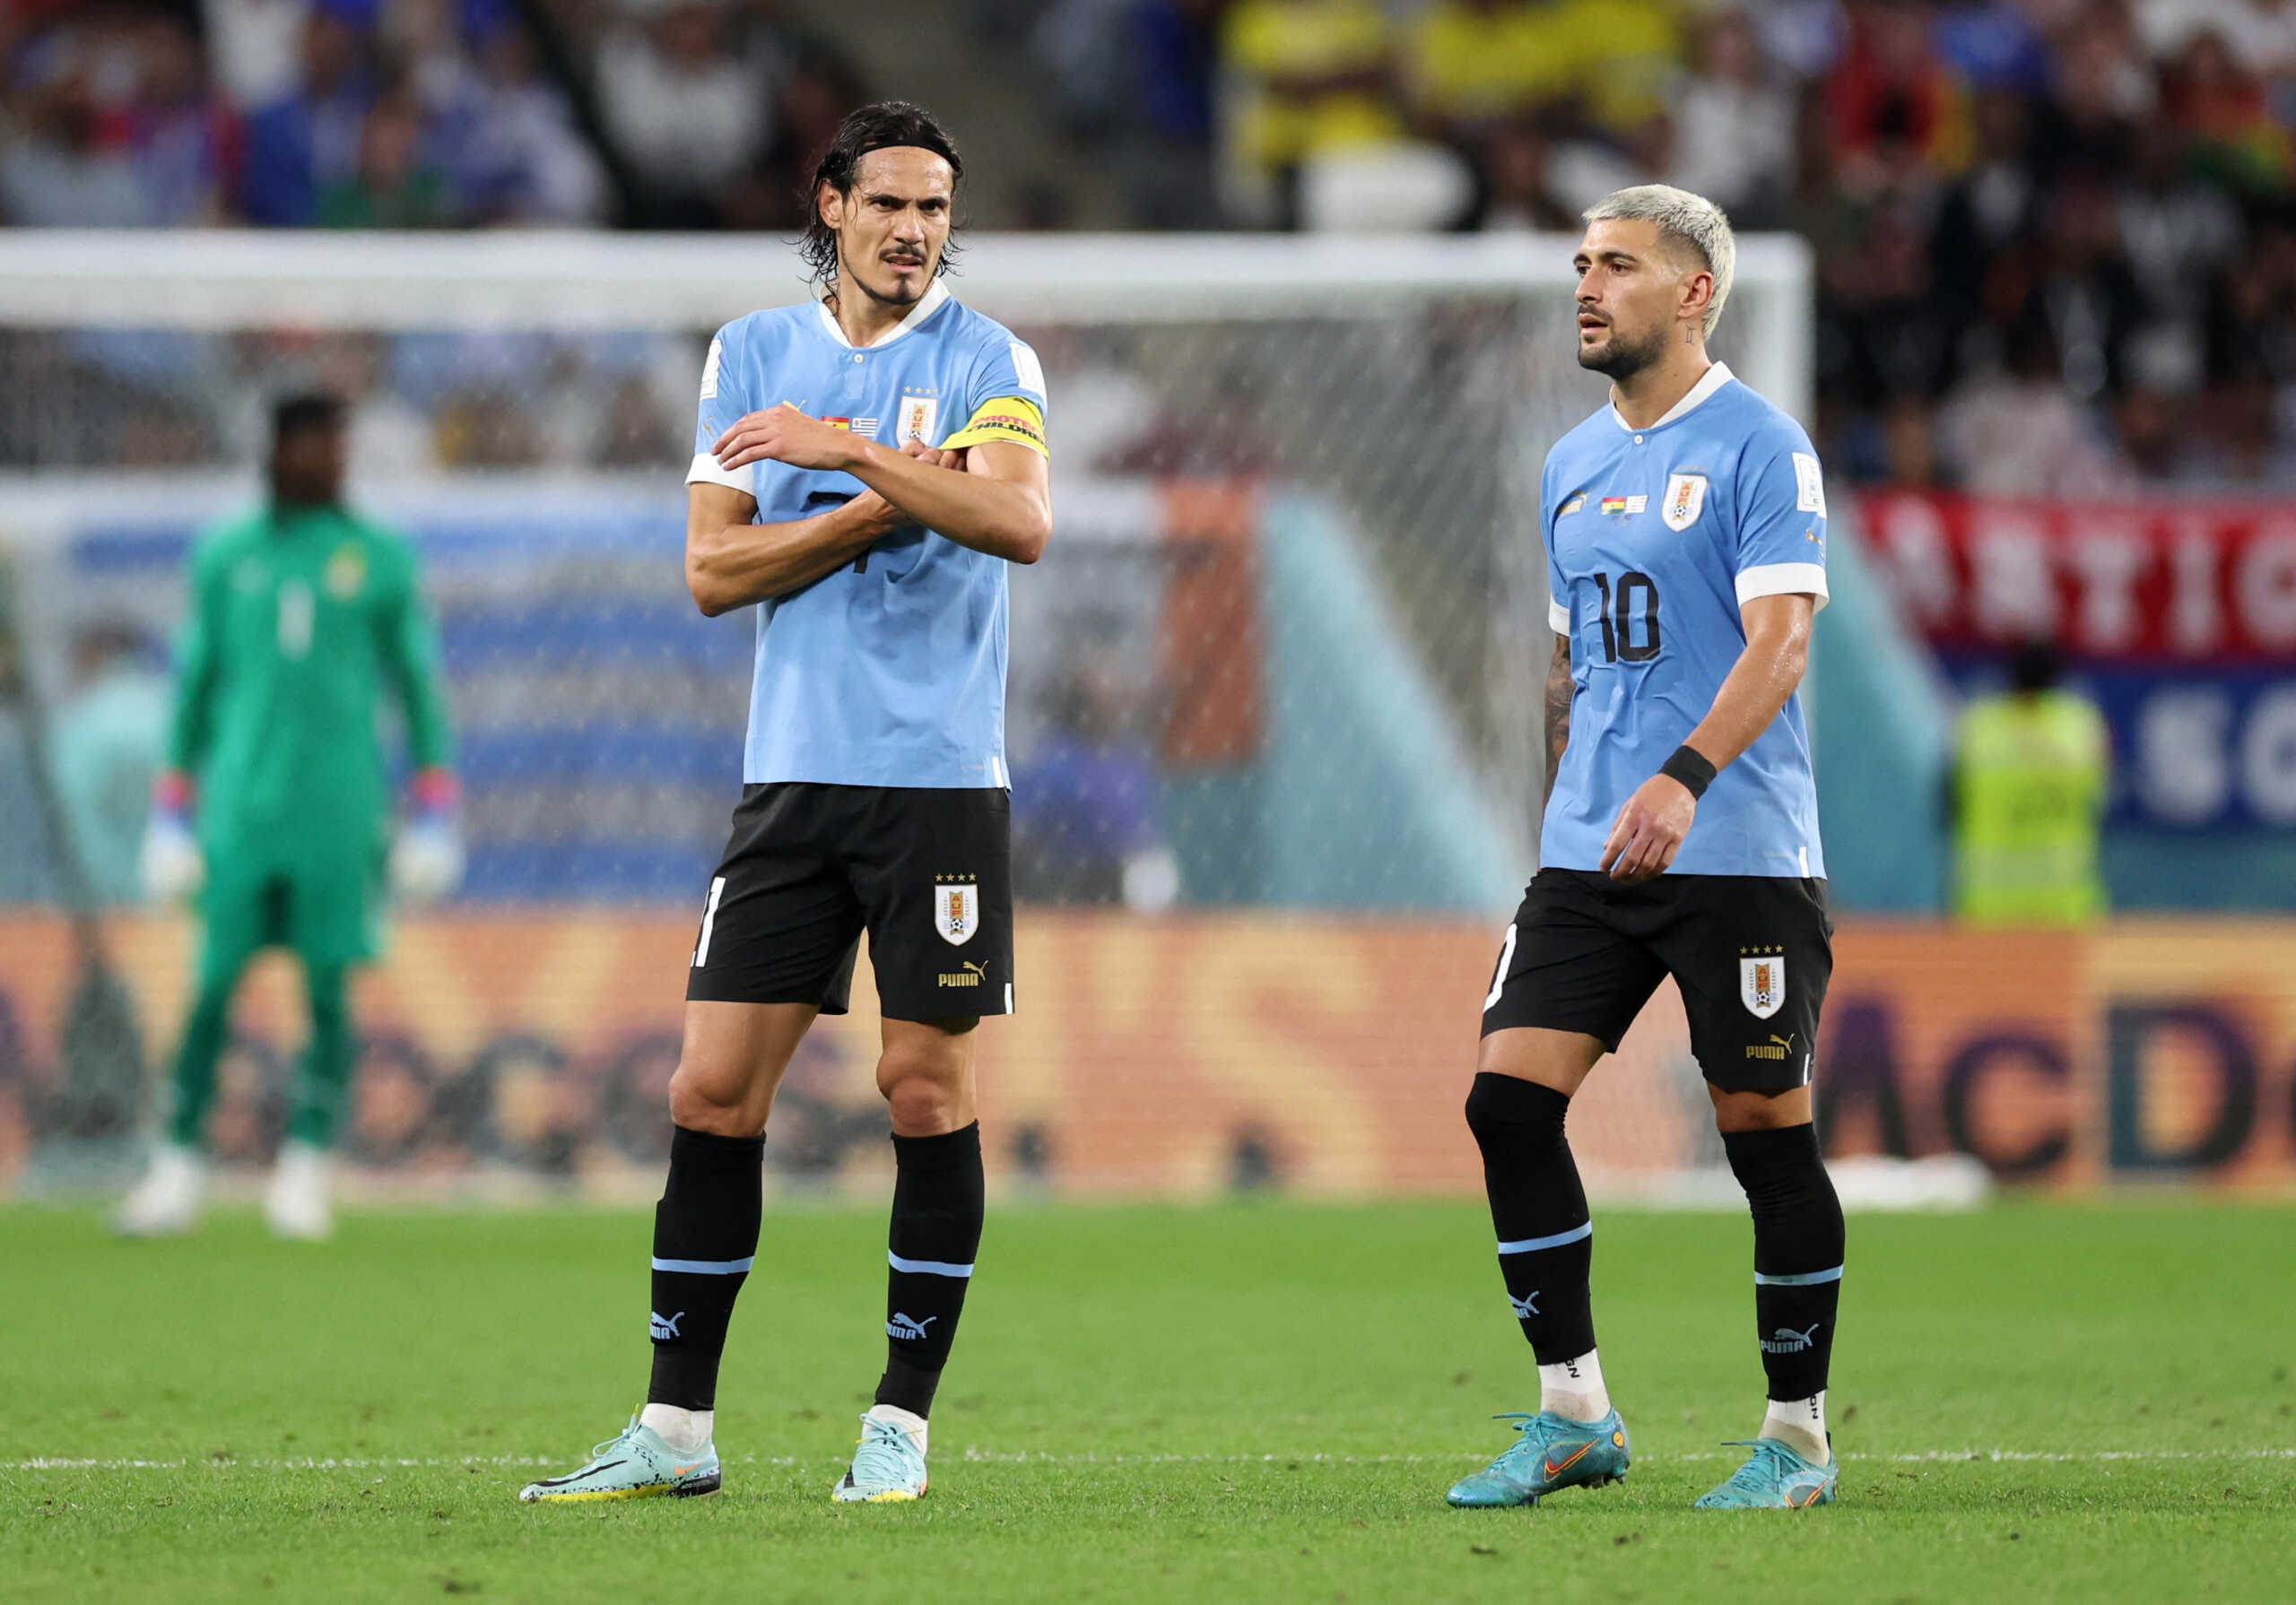 Γκάνα – Ουρουγουάη 0-2: Η χαρά έγινε πίκρα και αποκλεισμός στο φινάλε του αγώνα του Μουντιάλ 2022